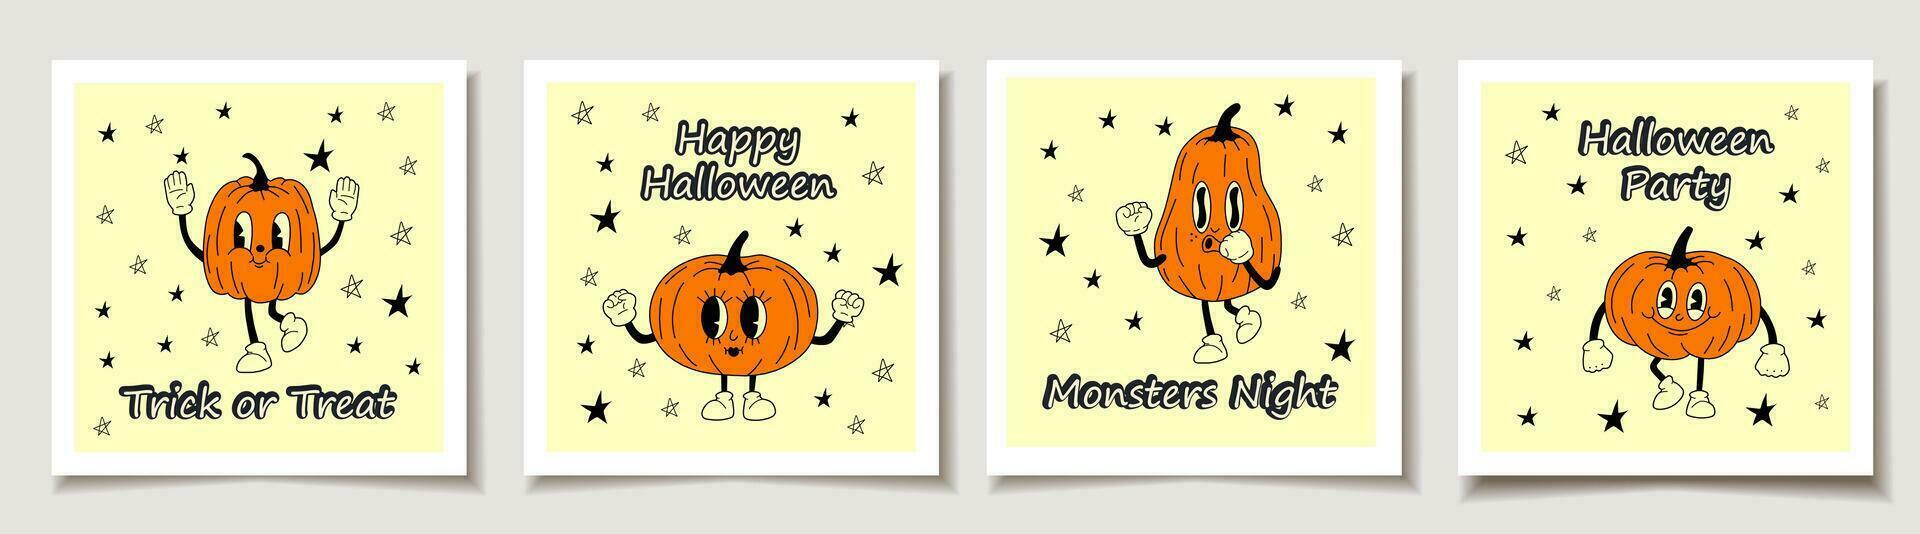 reeks van halloween kaarten met reeks van vier halloween pompoenen, grappig gezichten. groet kaarten met magie artikelen. vector